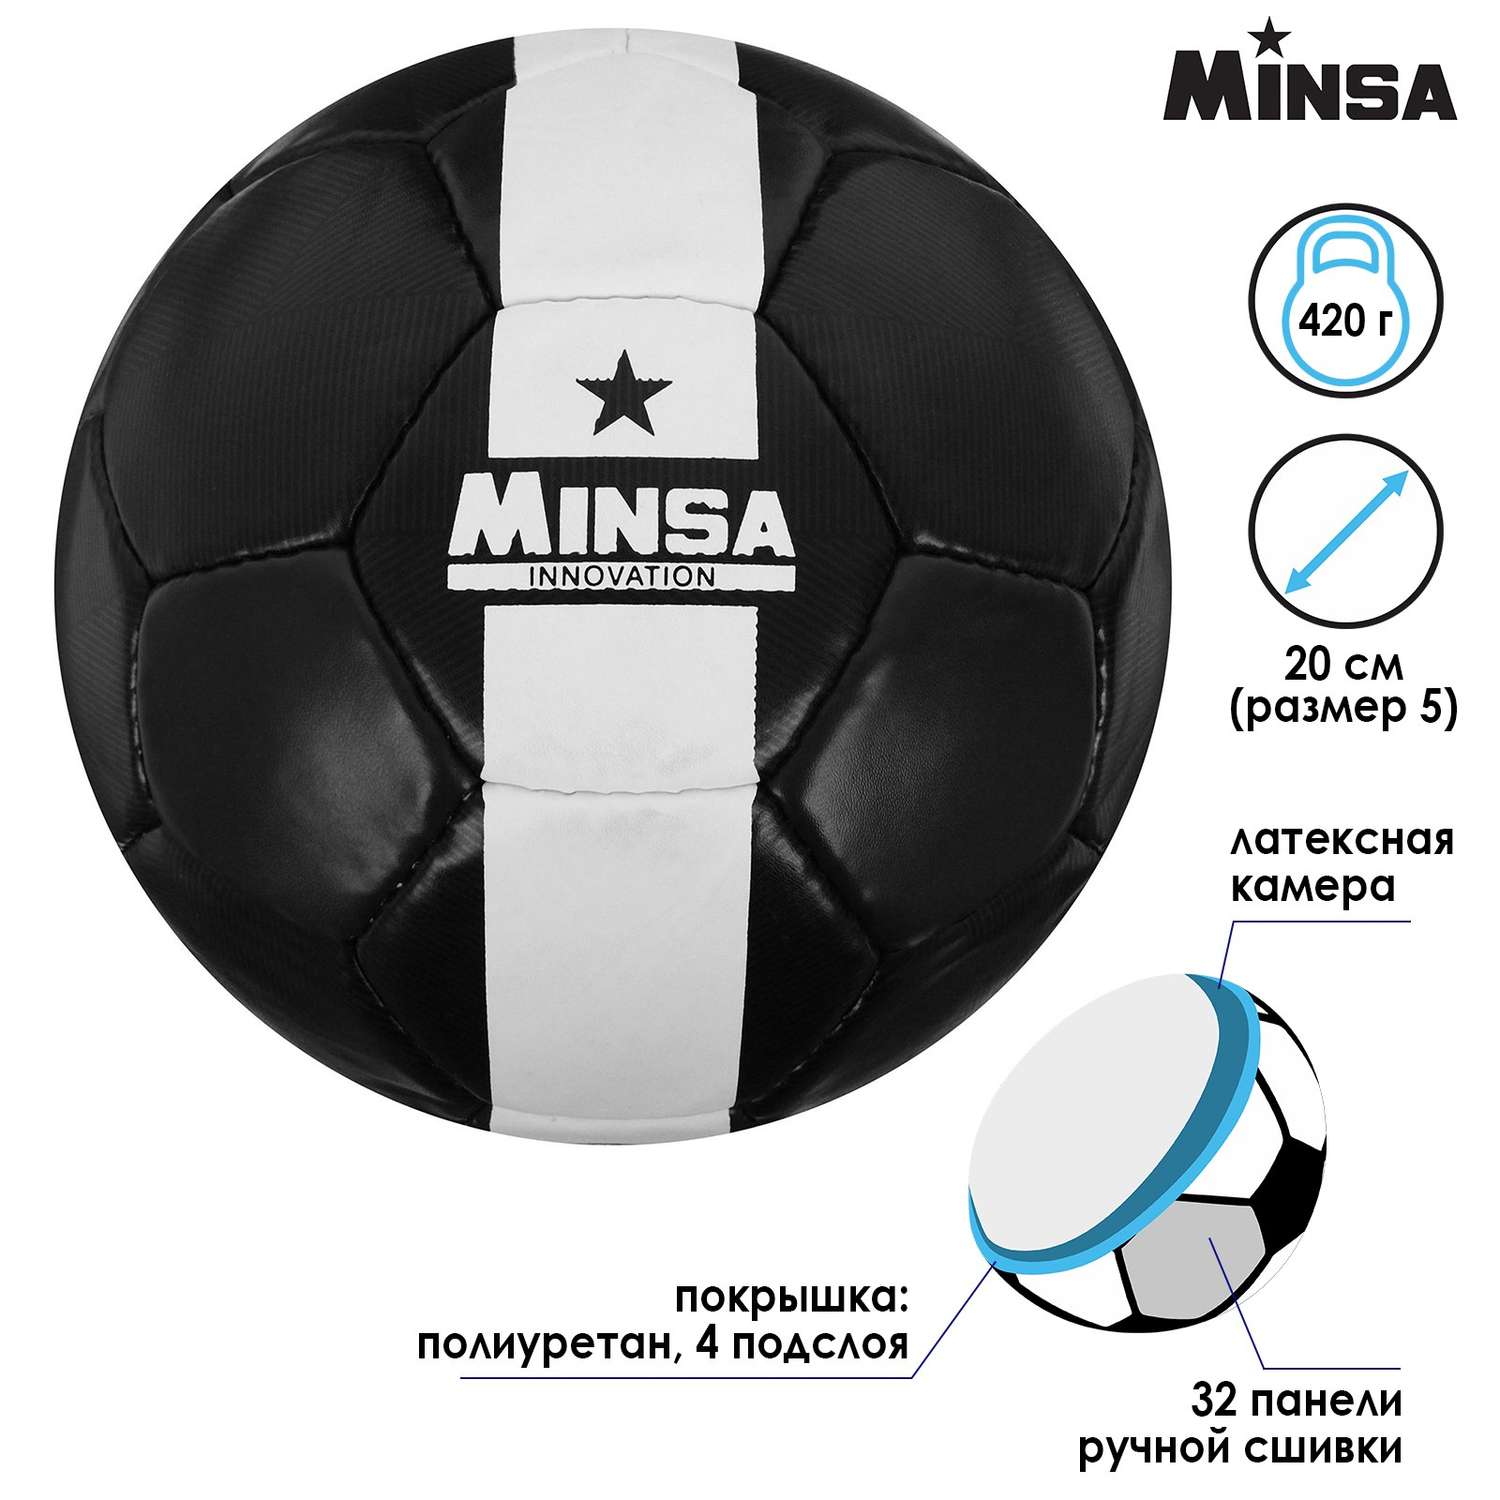 Мяч MINSA футбольный PU. ручная сшивка. 32 панели. размер 5. 420 г - фото 2